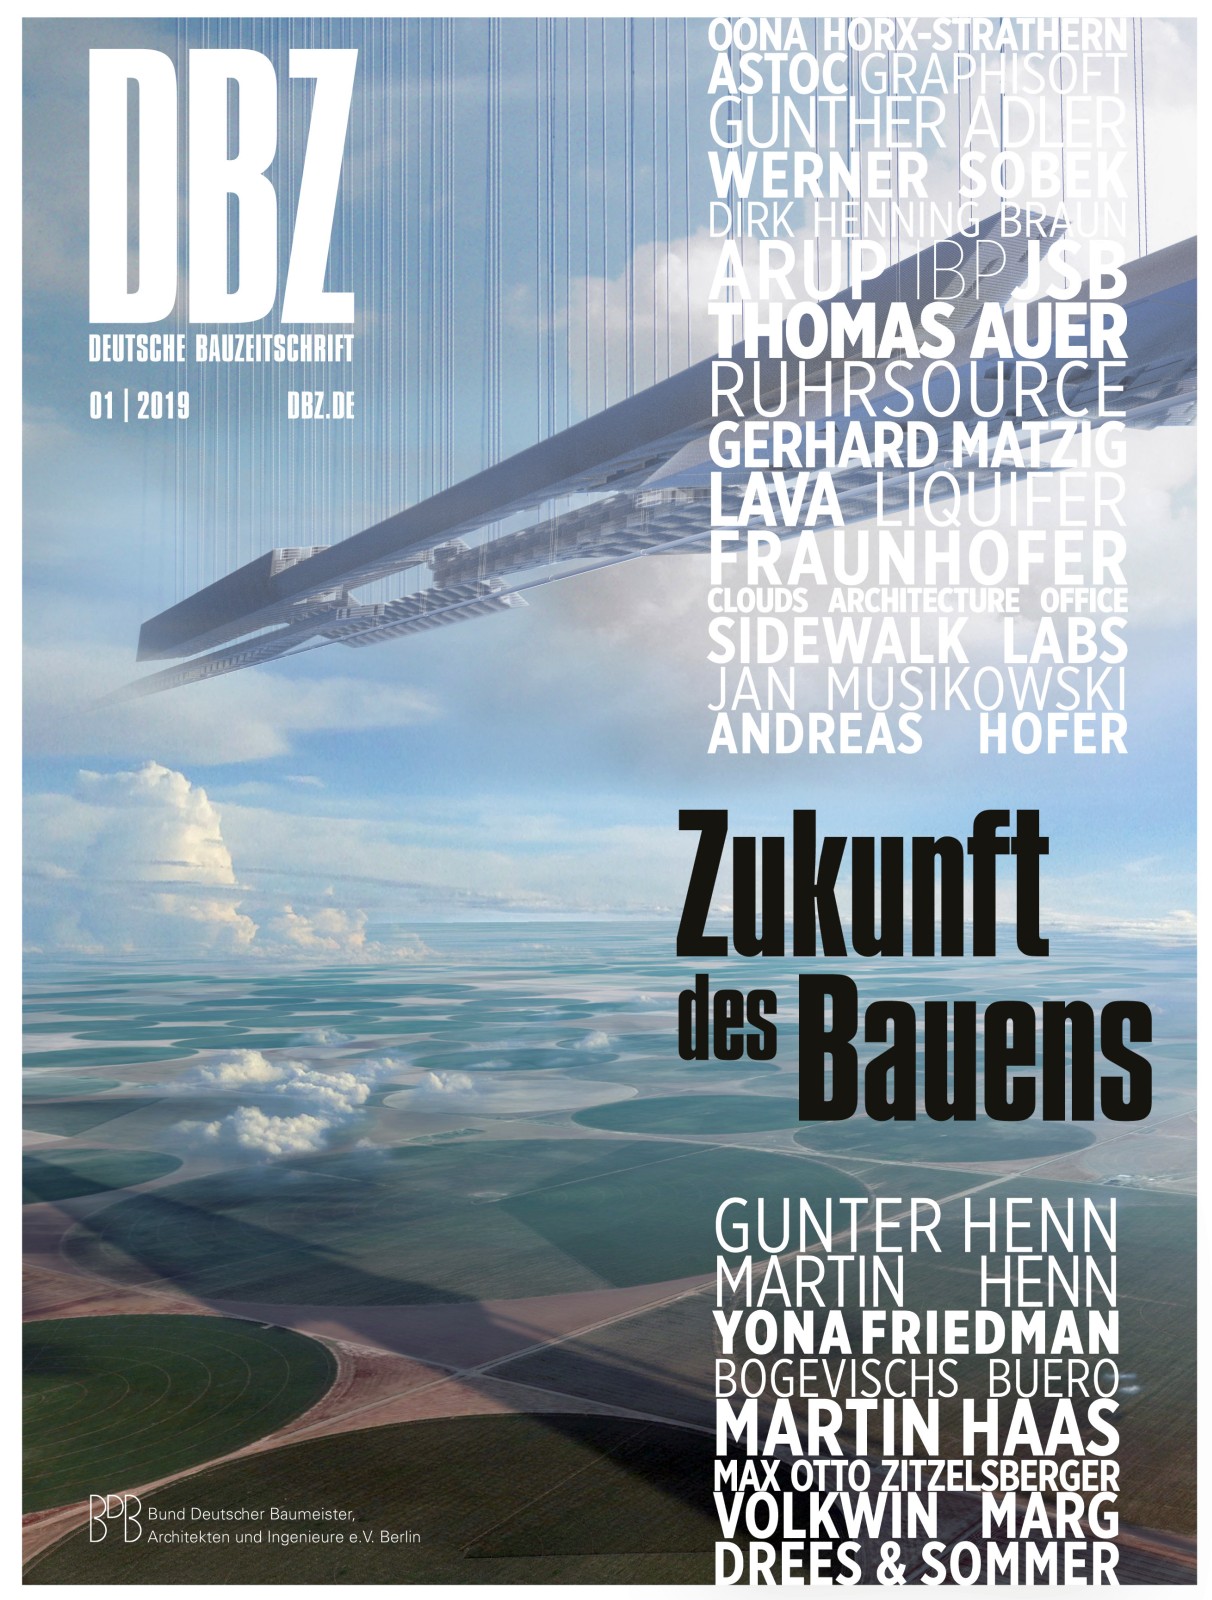 DBZ Deutsche Bauzeitschrift